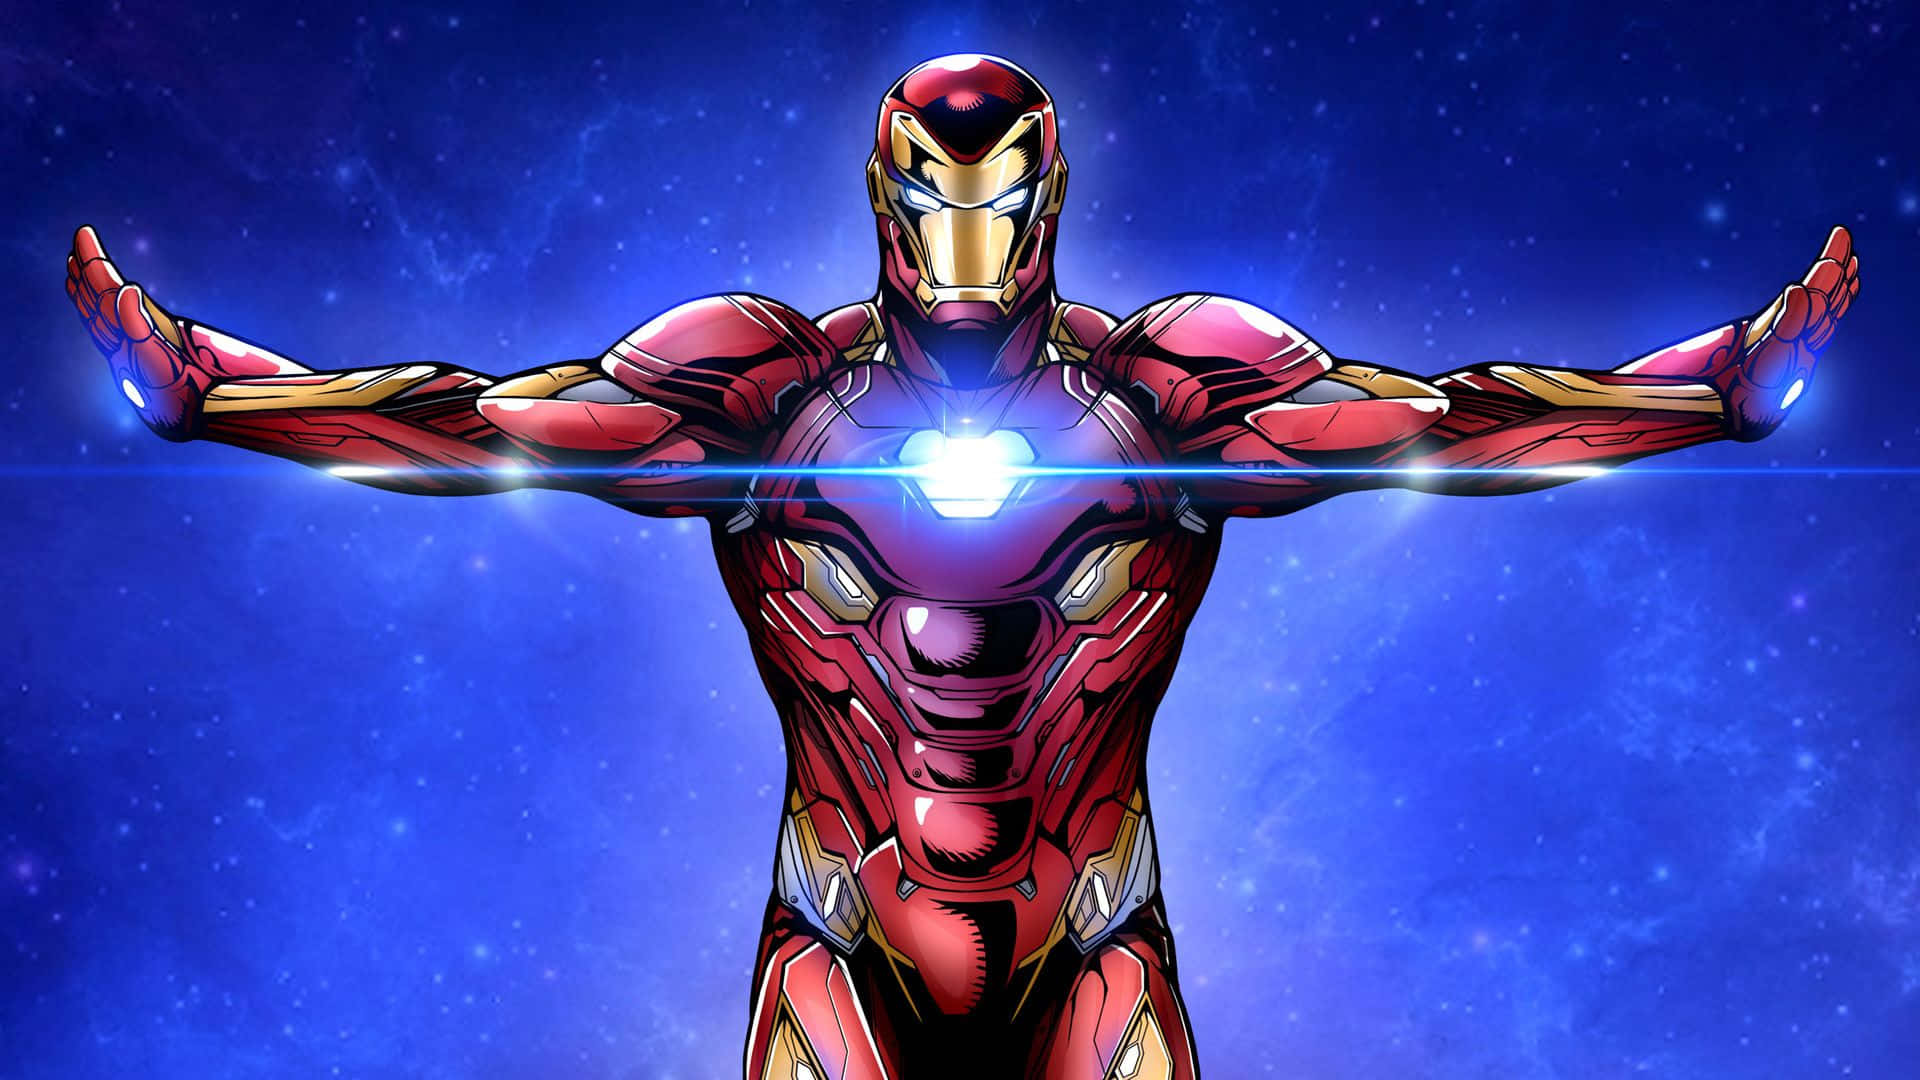 Avengers Iron Man Cartoon Art Wallpaper